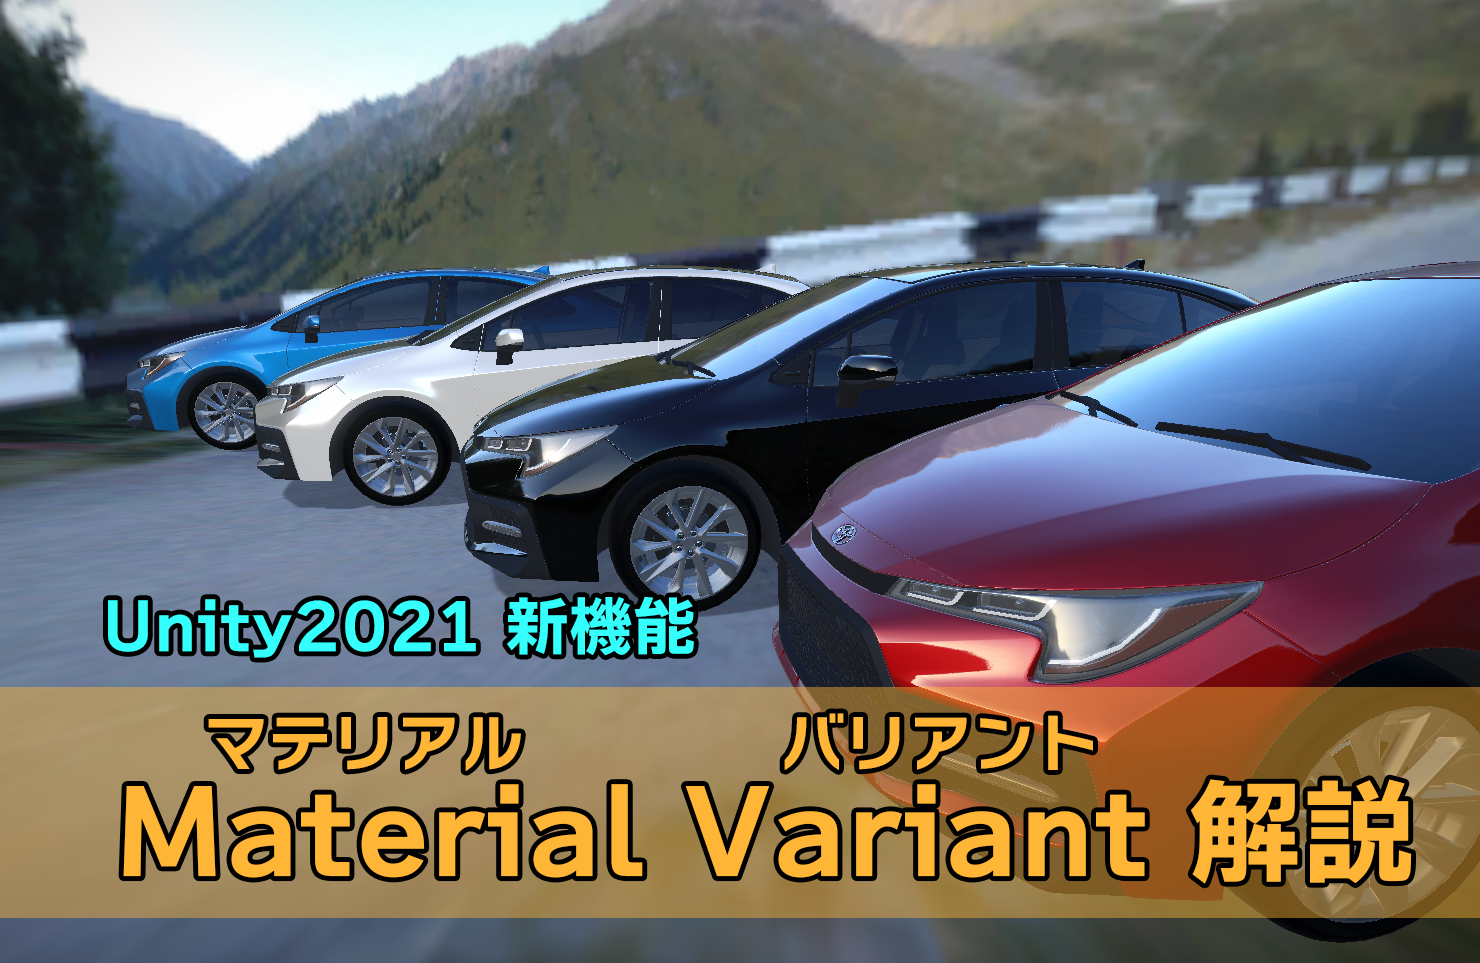 Unity2021の新機能—Material Variant(マテリアルバリアント)を簡単に解説！　マテリアル管理を楽にしよう！